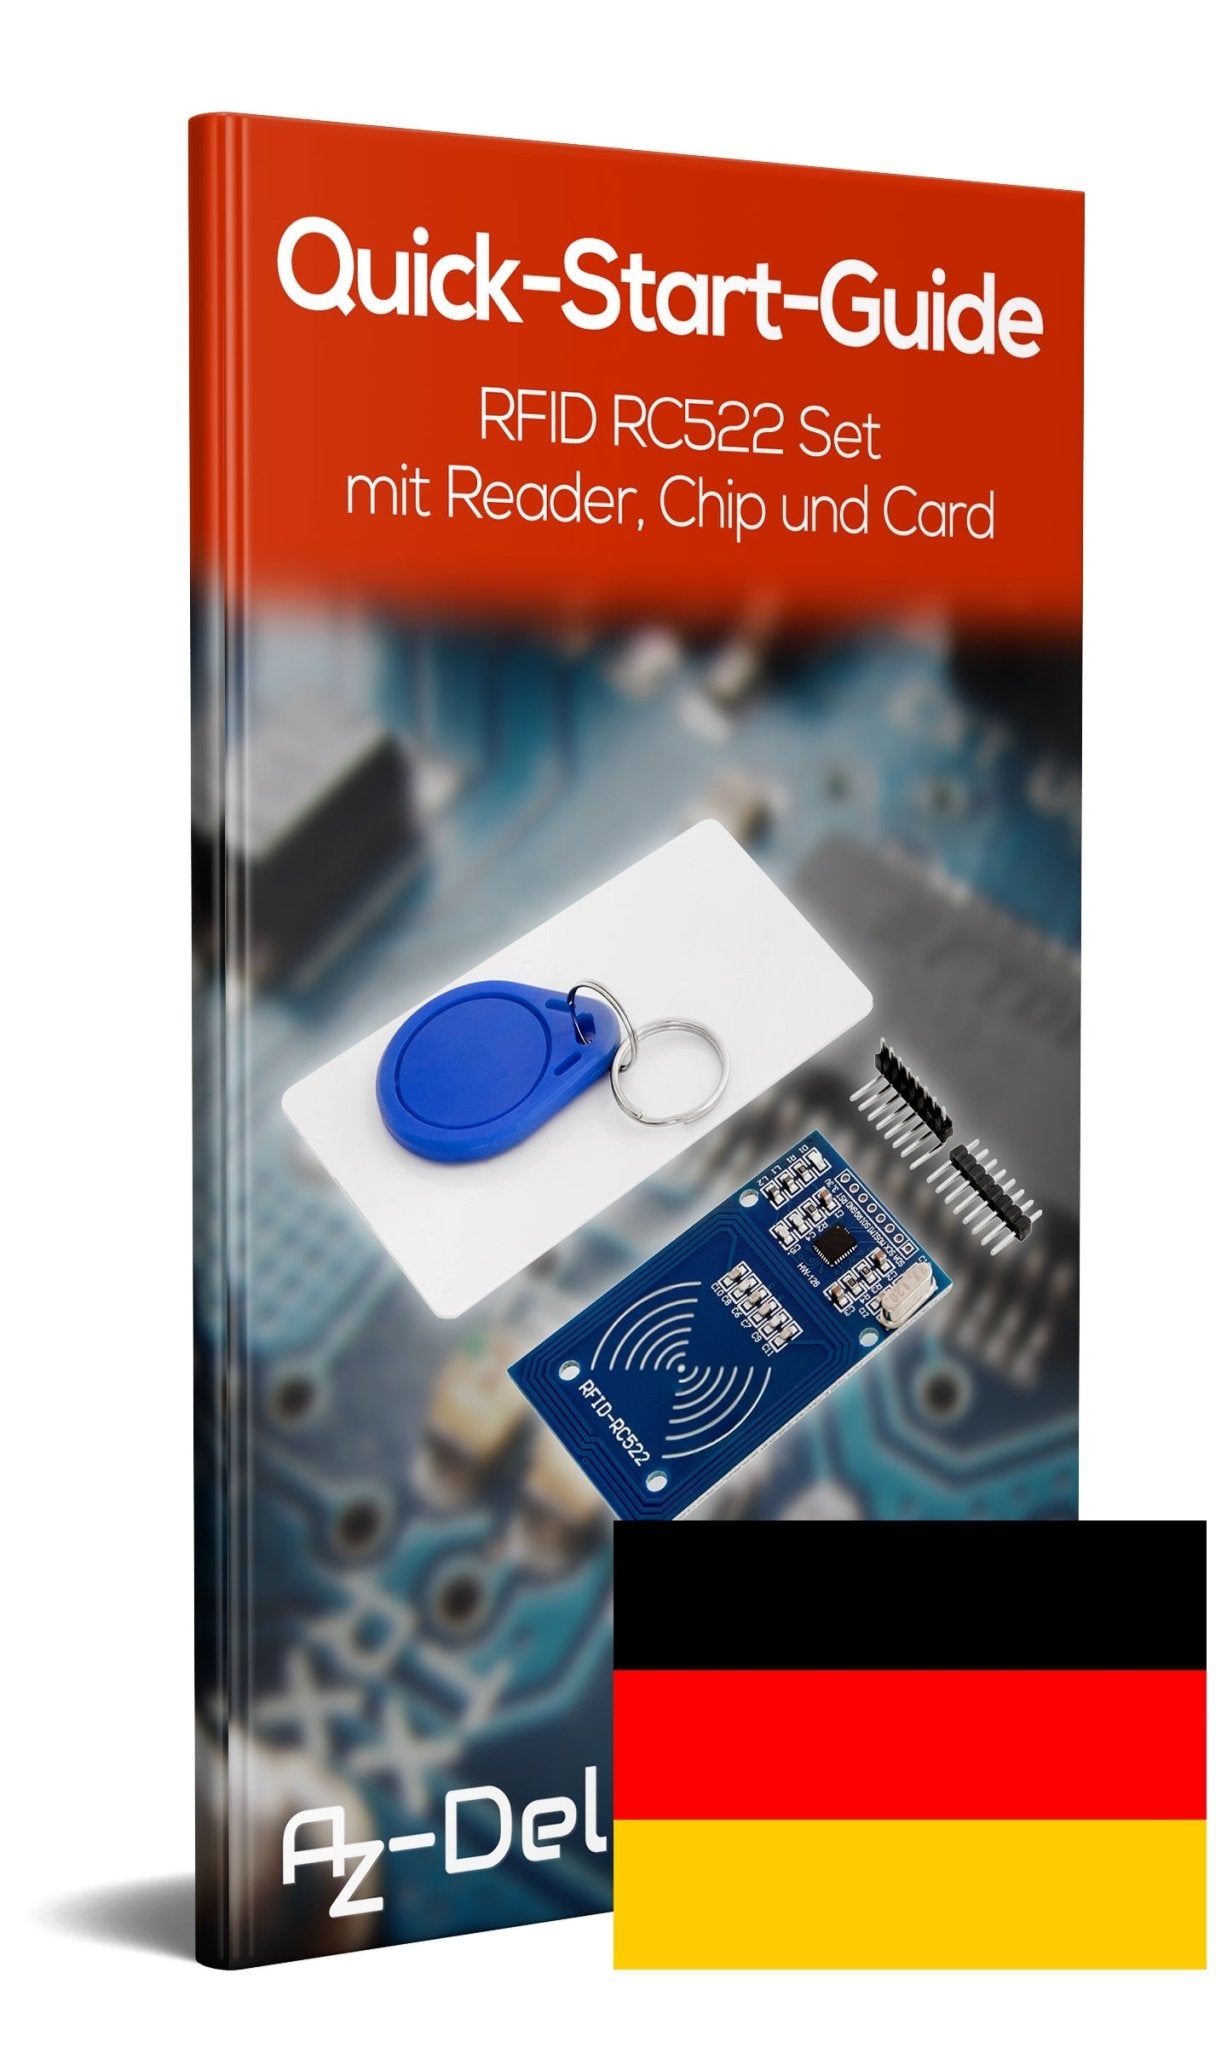 RFID Kit RC522 mit Reader, Chip und Card für Raspberry Pi (13,56MHz) - AZ-Delivery